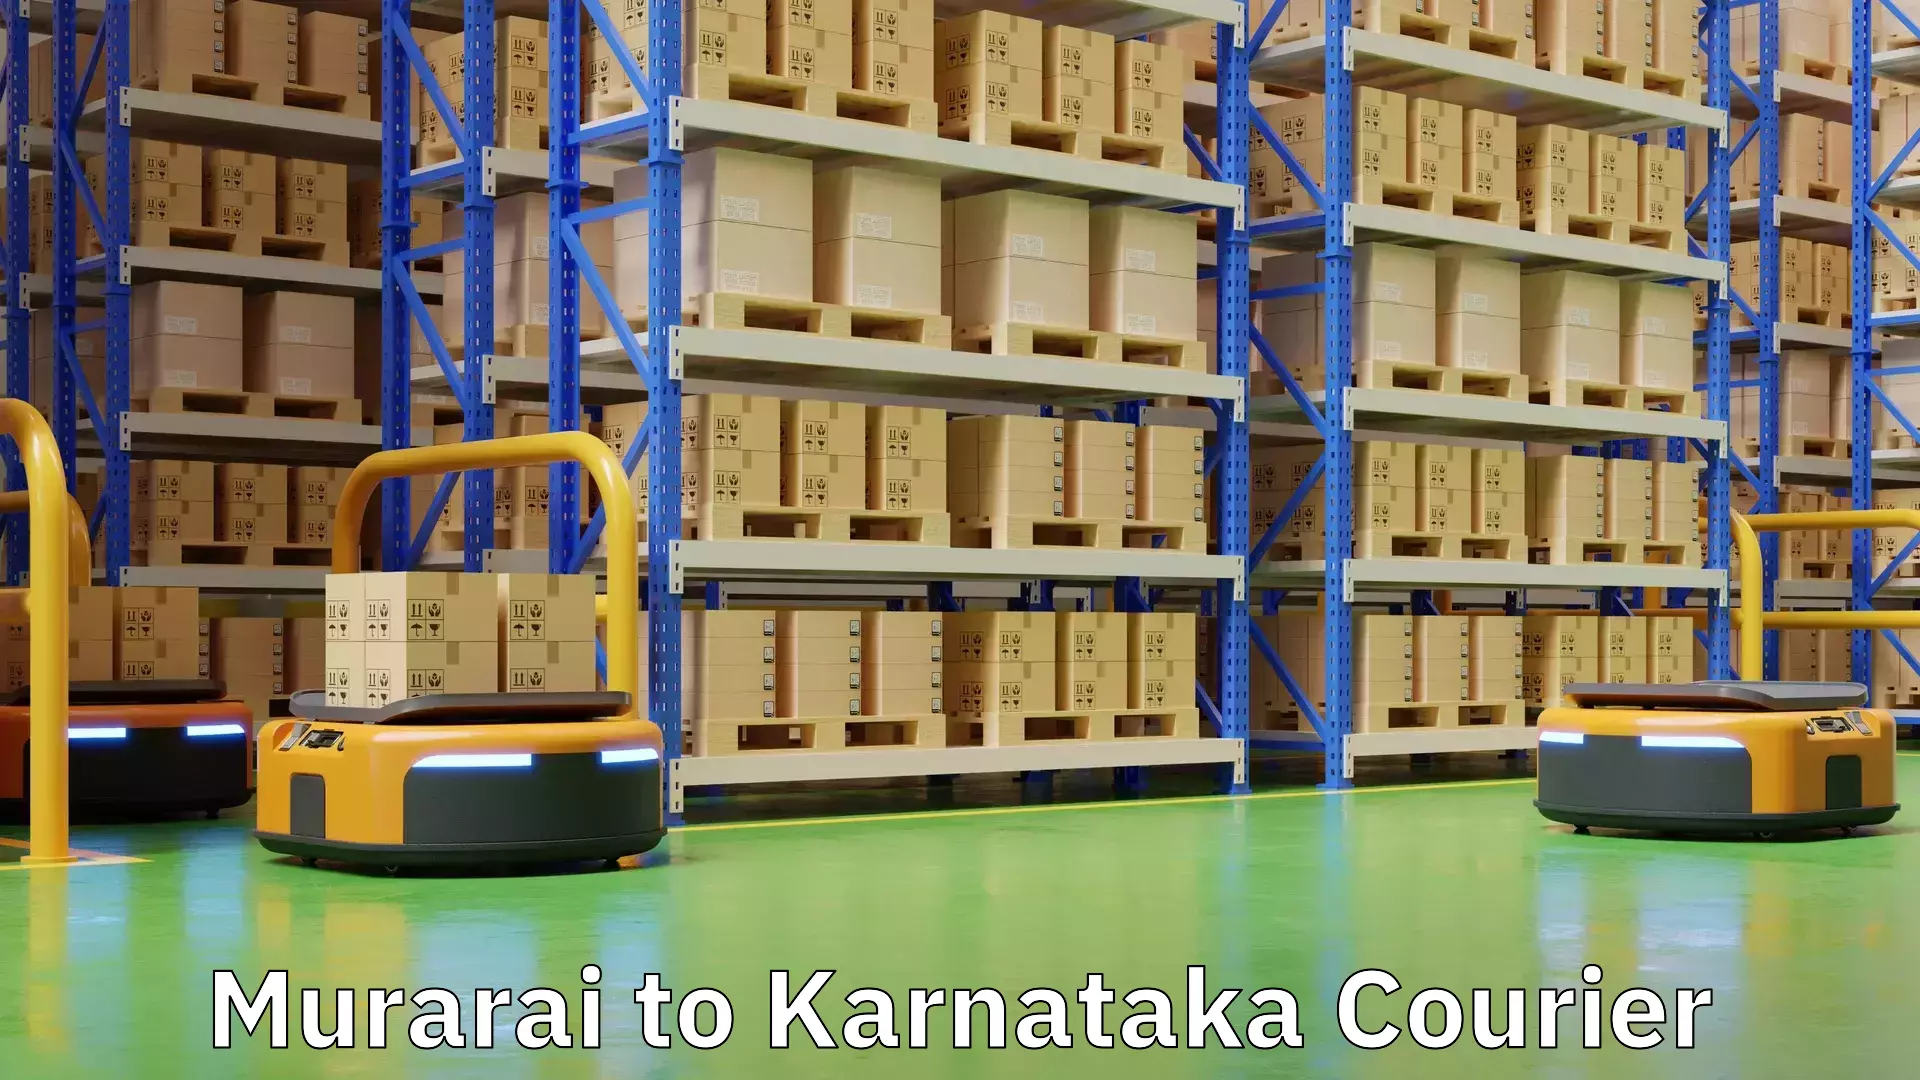 Custom courier packaging Murarai to Karnataka